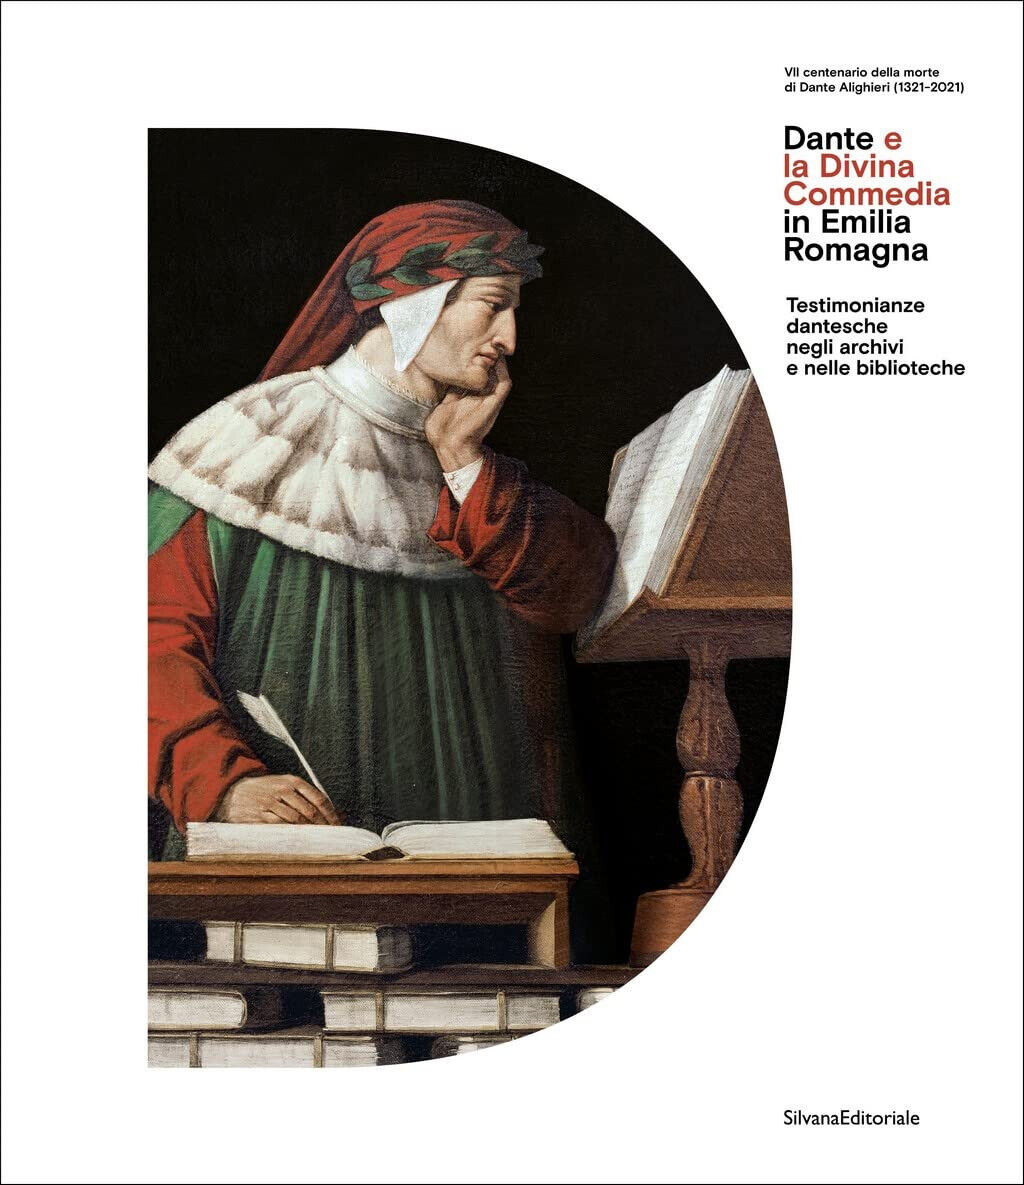 Dante e la Divina Commedia in Emilia Romagna - G. Albanese - Silvana, 2021